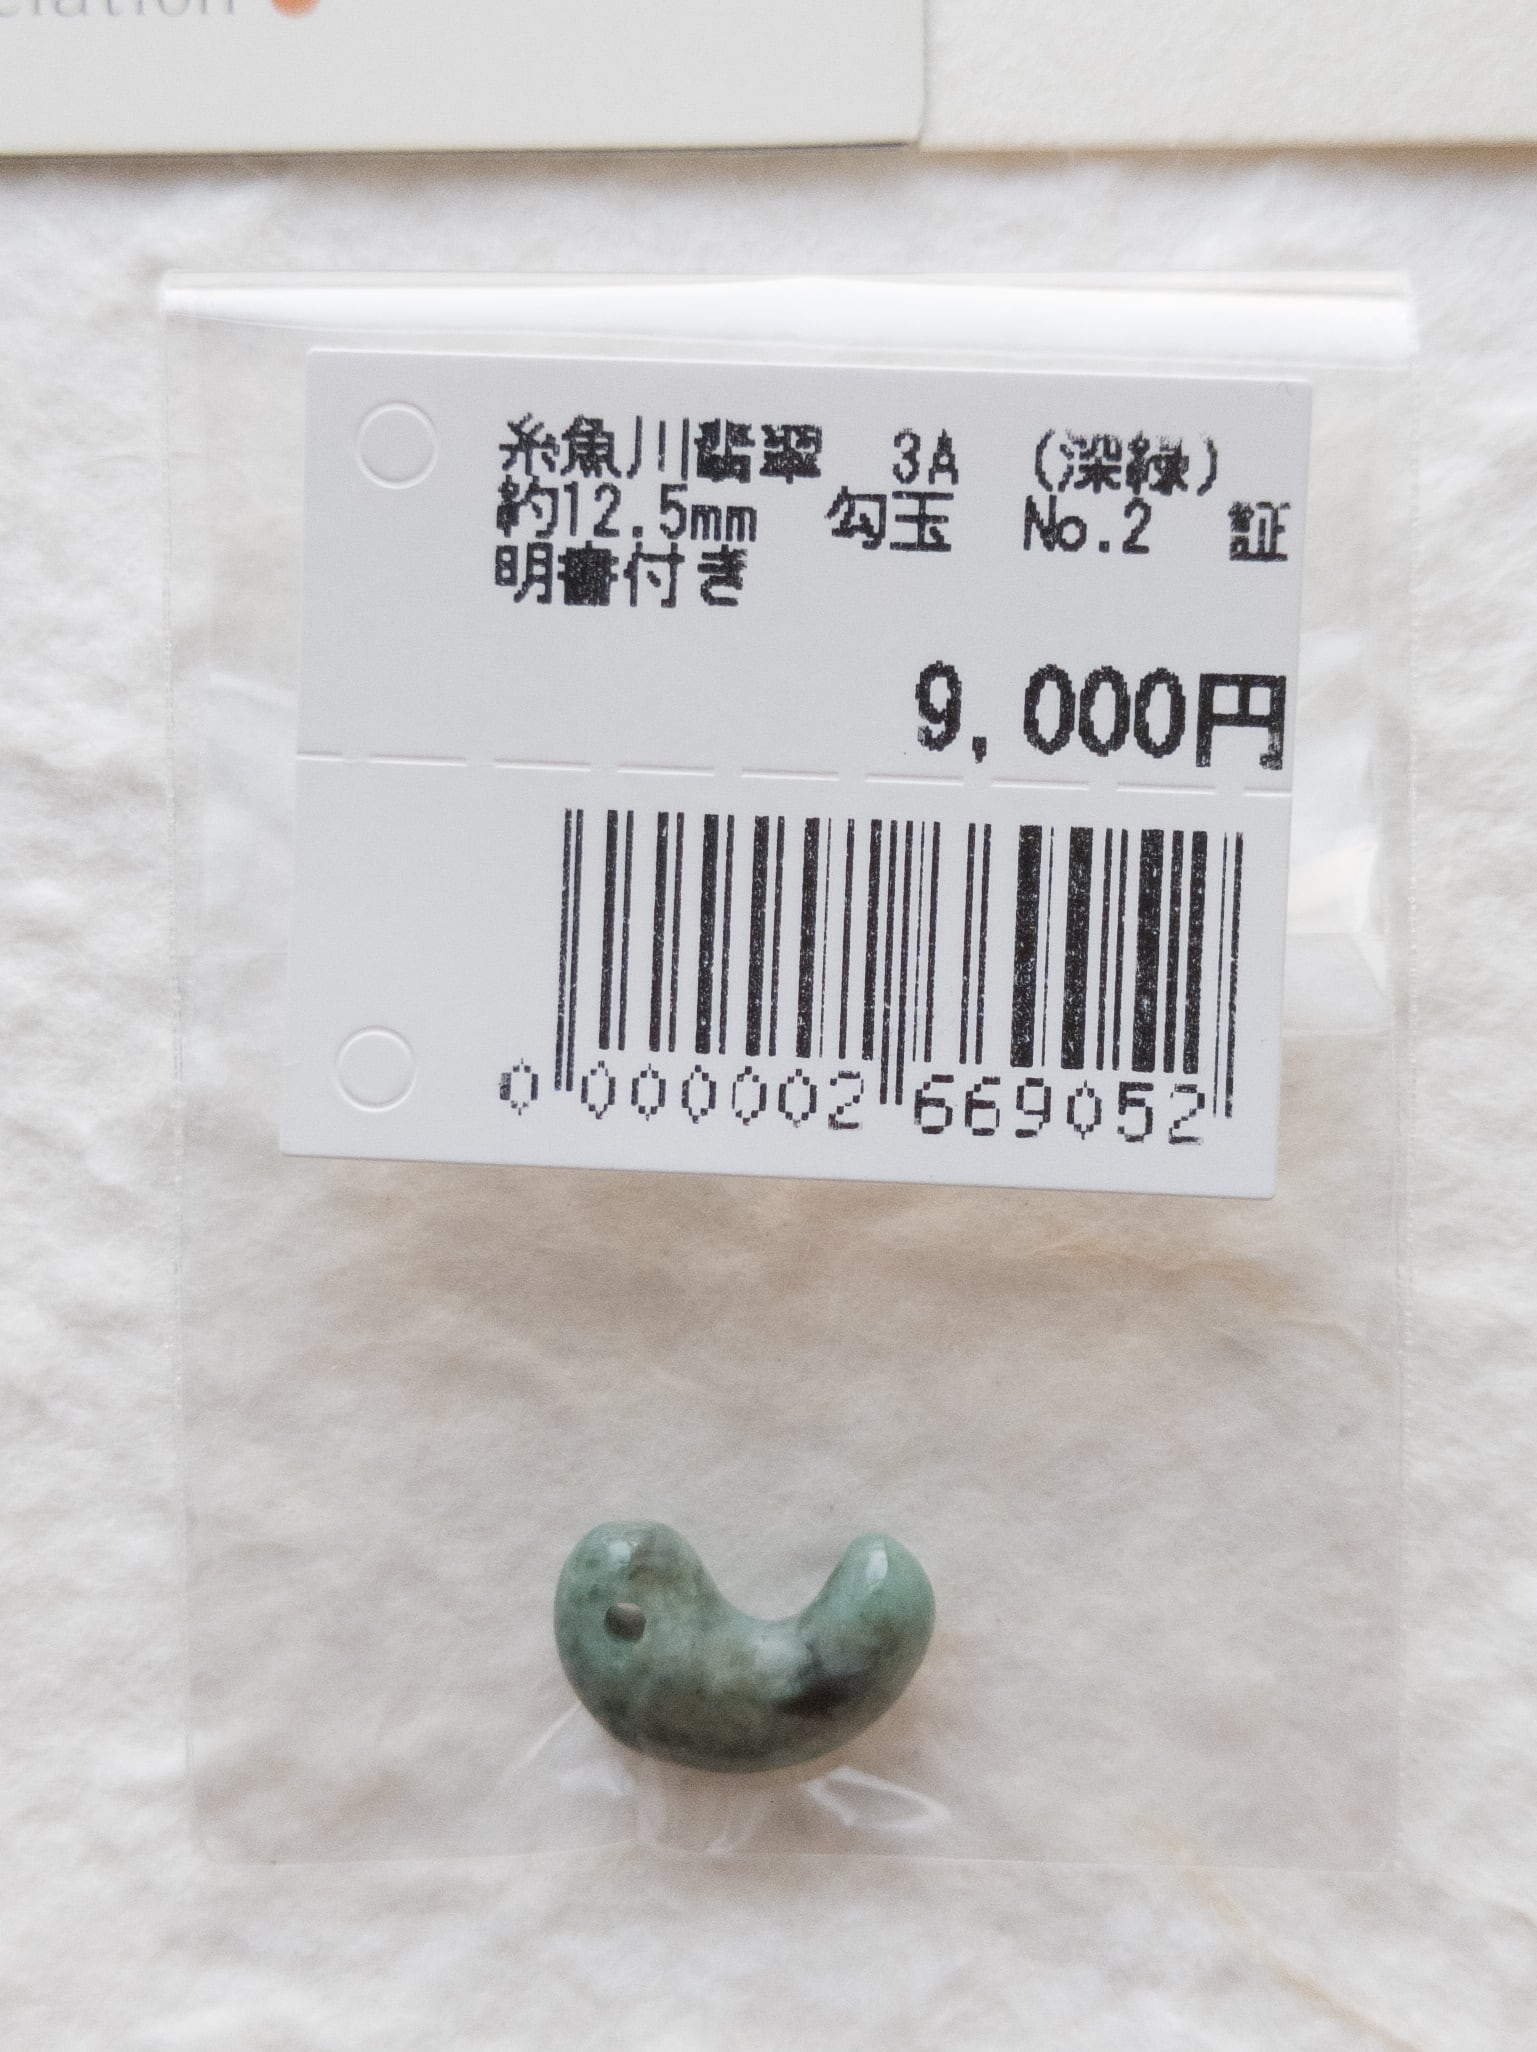 【勾玉】糸魚川翡翠 AAA (深緑) 約12.5mm Ｎｏ．2 証明書付き ③